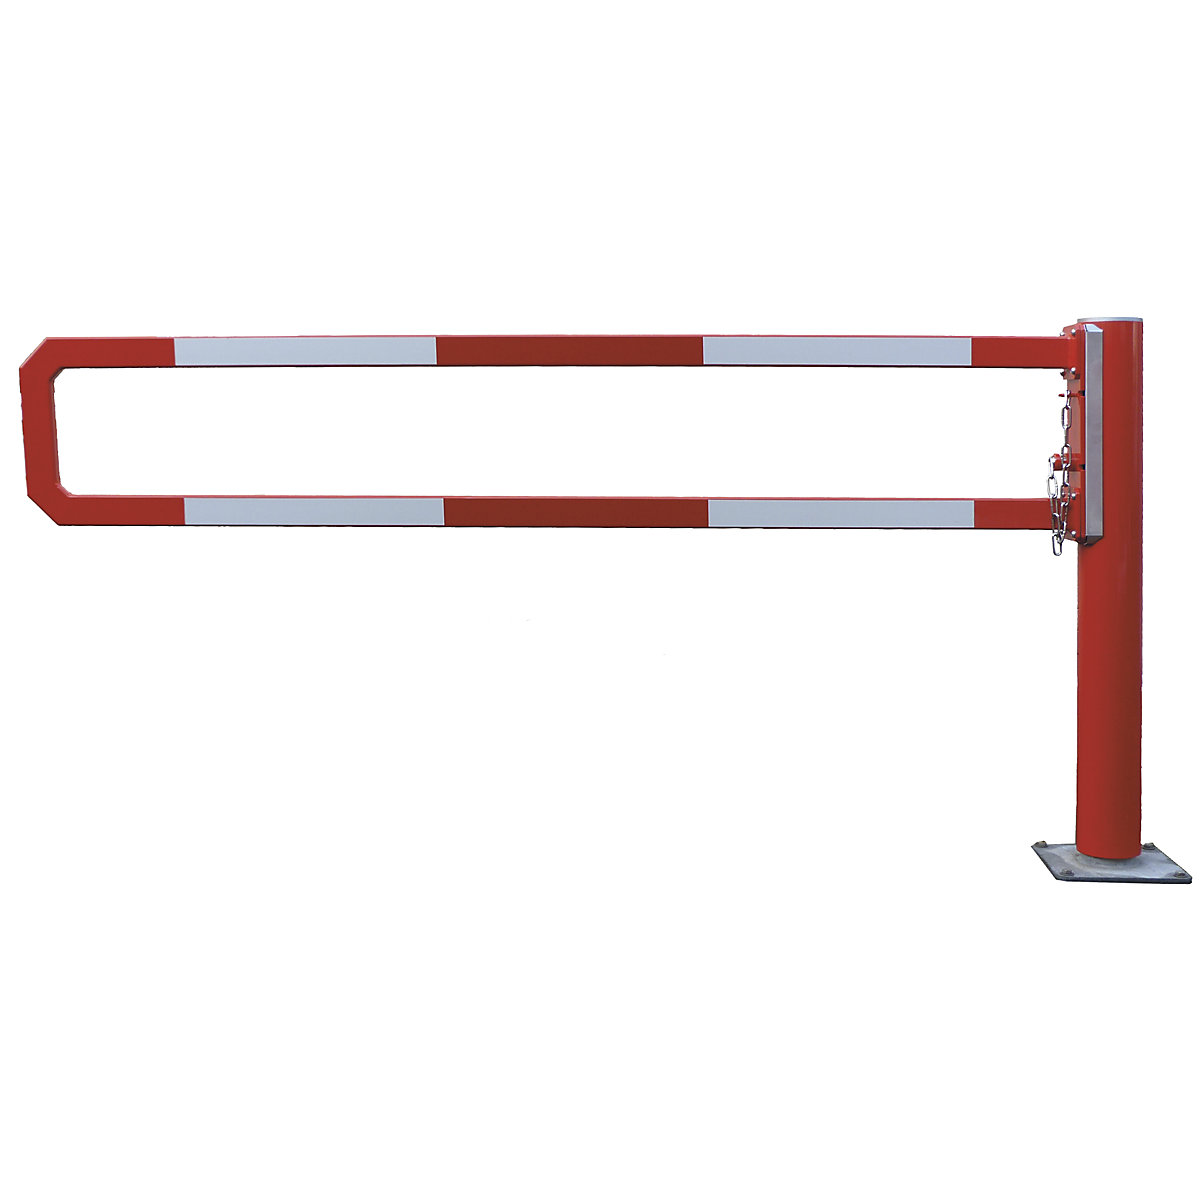 Mannus – Sbarramento girevole, lunghezza sbarra 1 m, zincatura a fuoco, verniciatura a polvere aggiuntiva in rosso